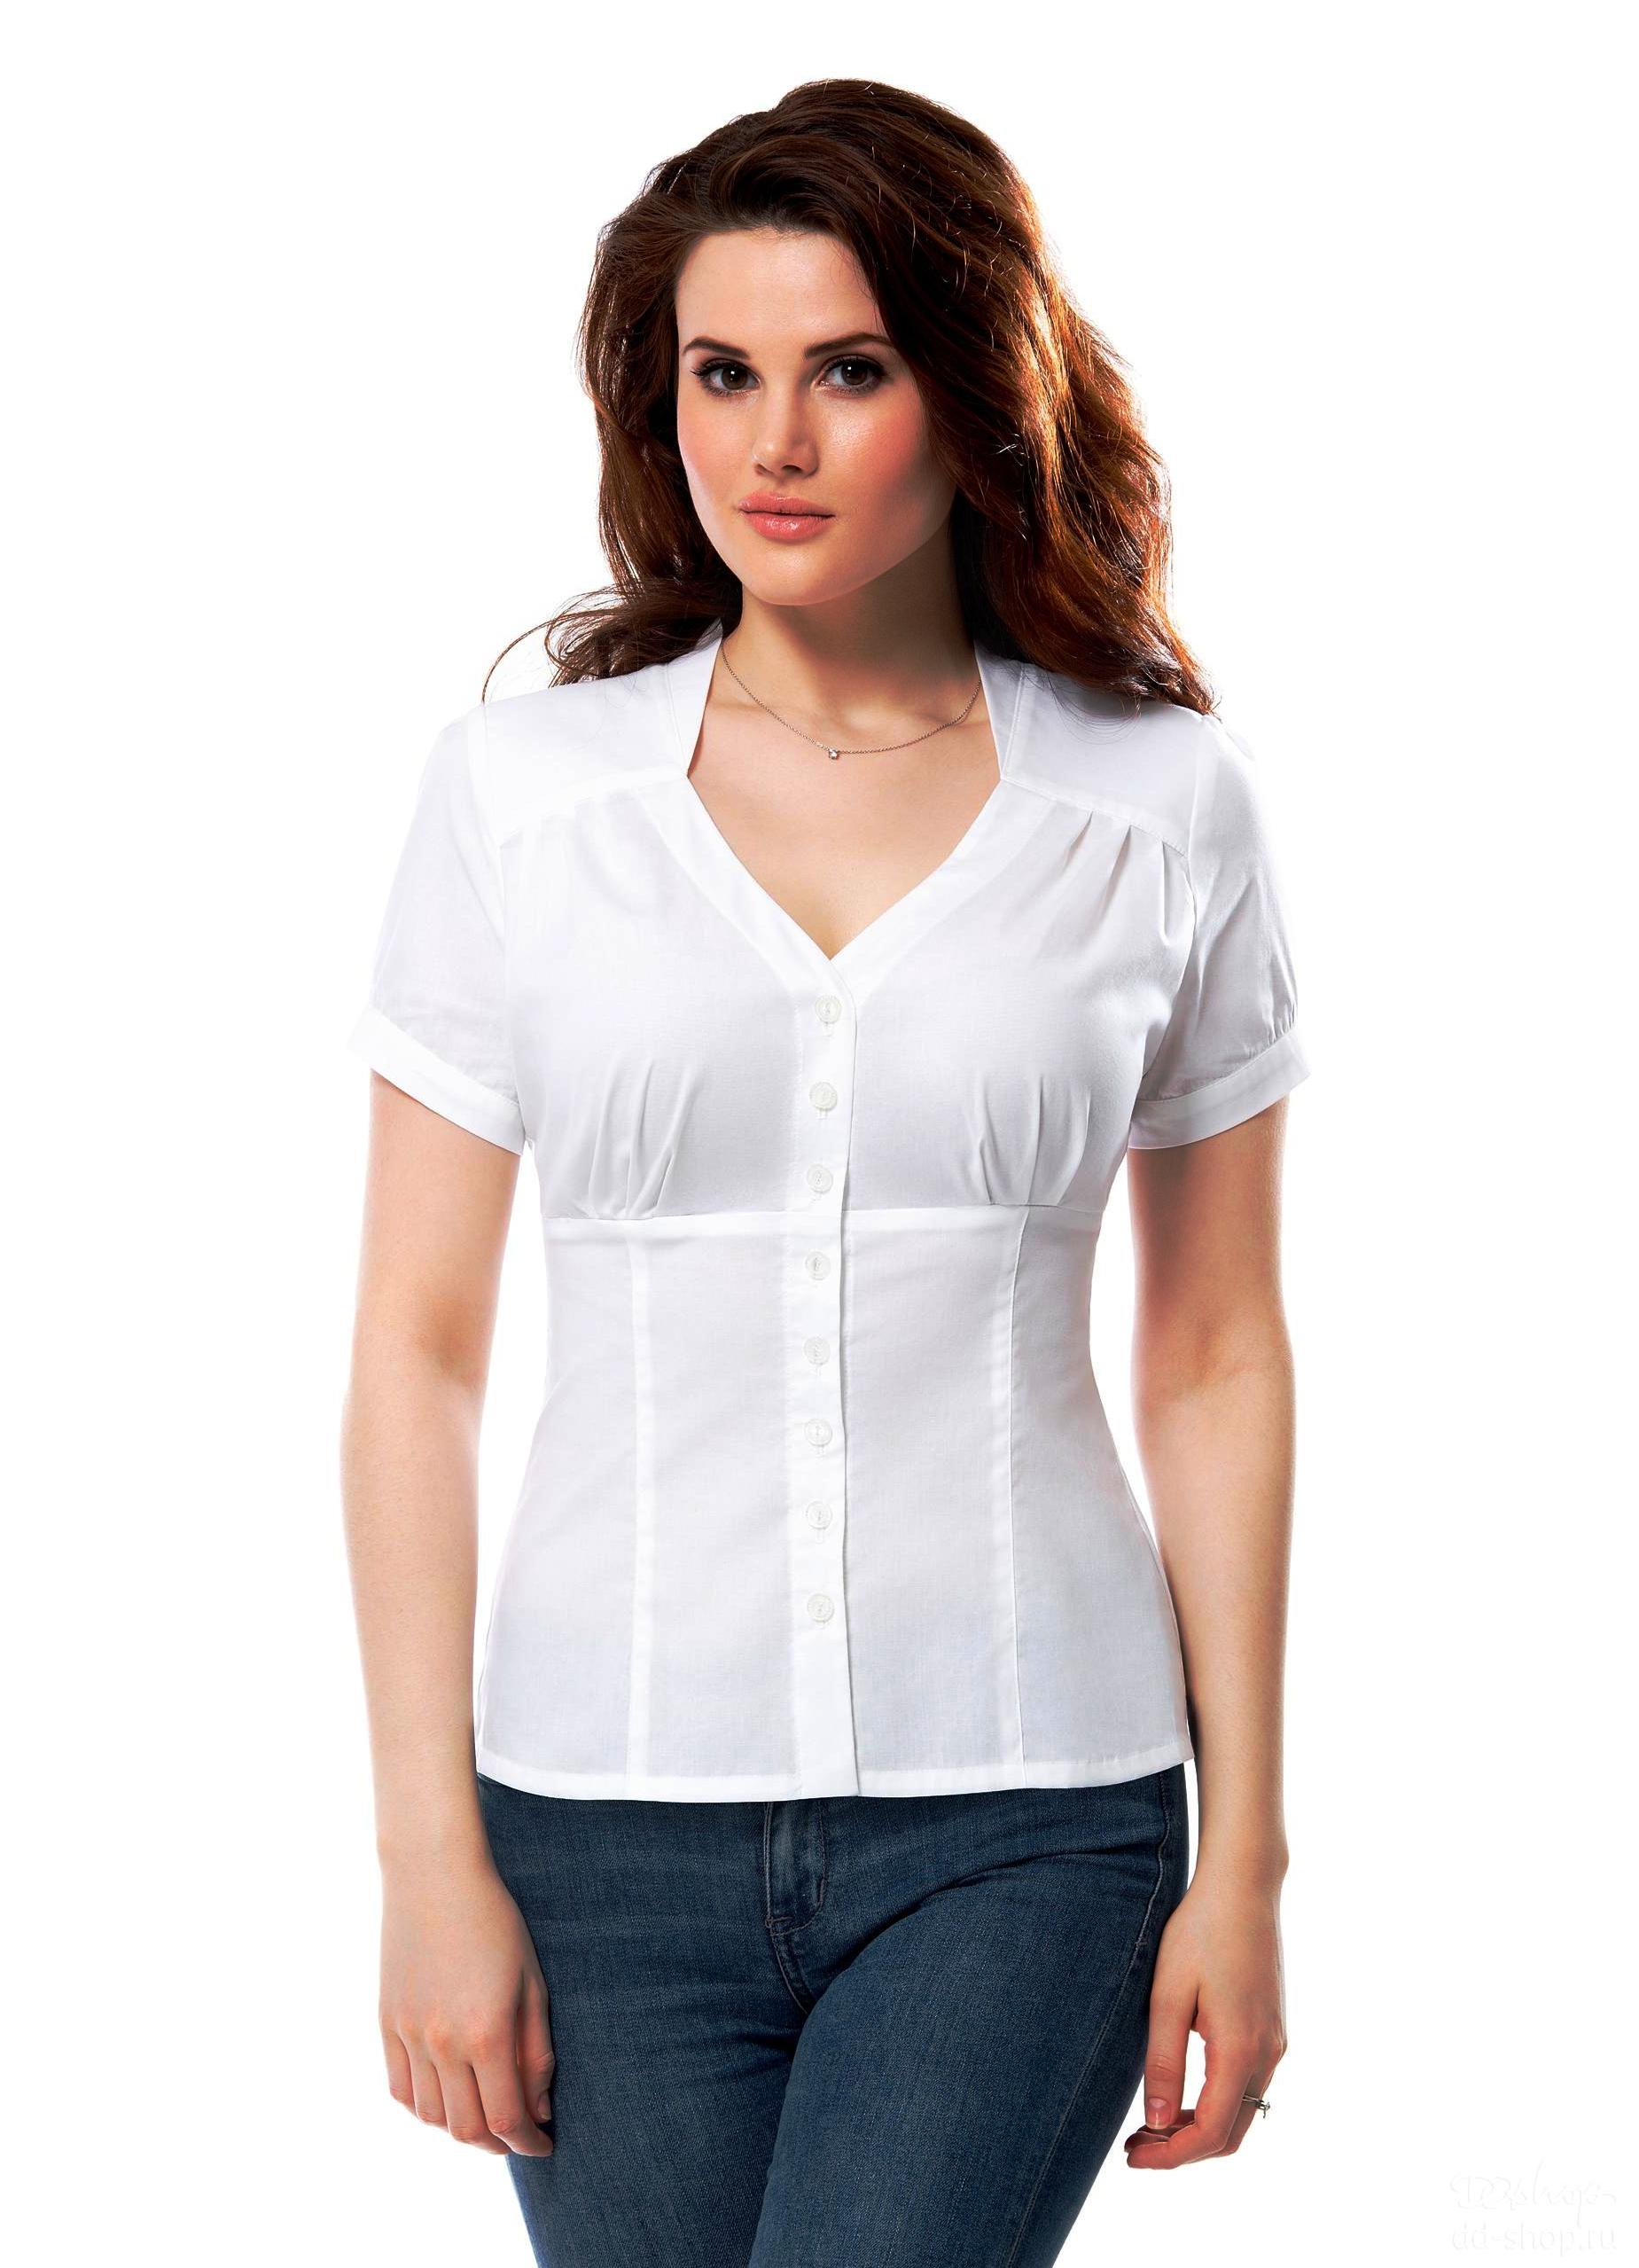 Фасоны летних блузок с коротким рукавом для полных женщин фото